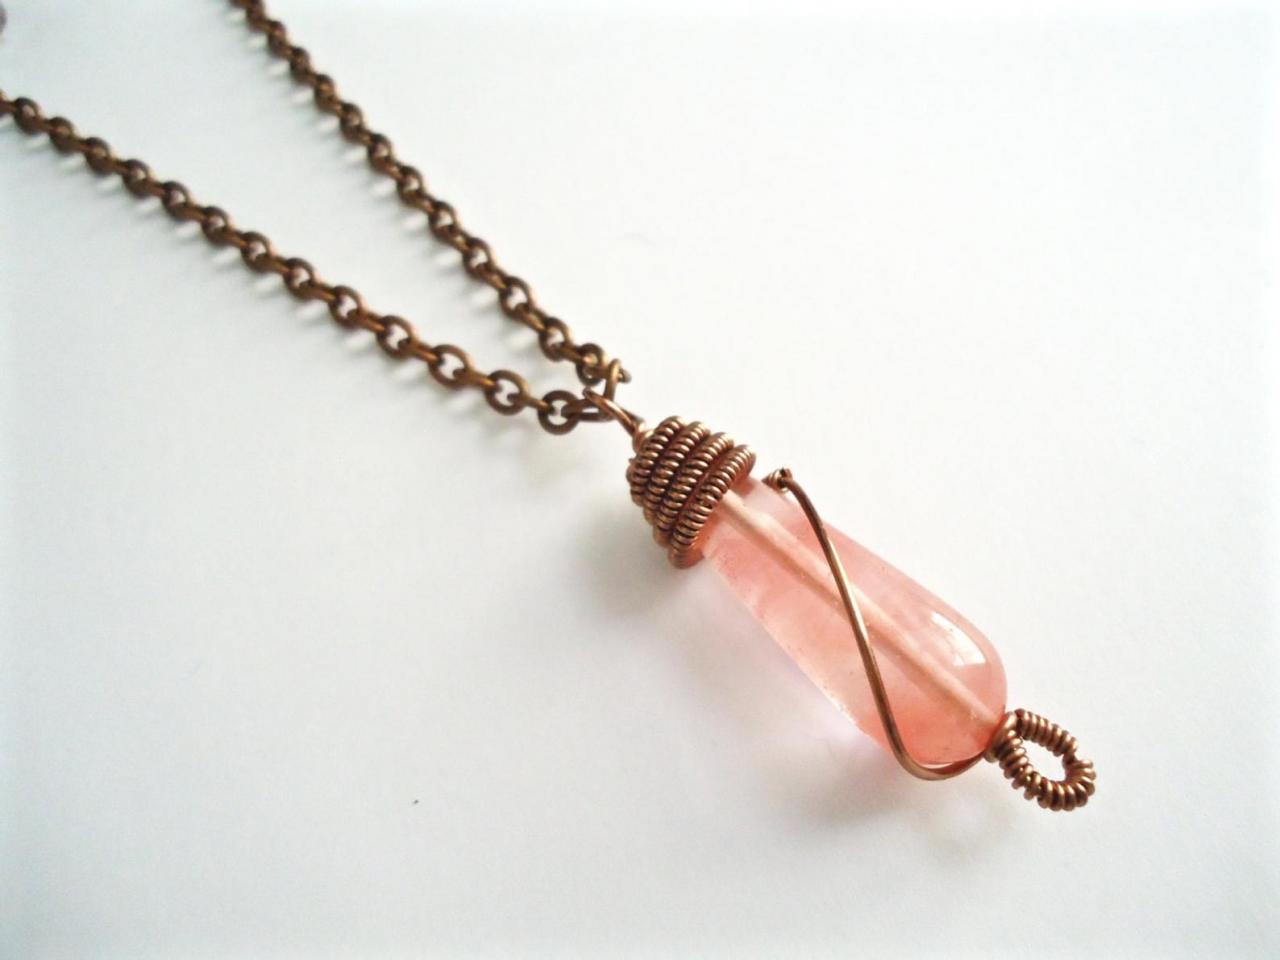 Cherry Quartz Pendant - Peach Pink Pendant - Teardrop Necklace - Cherry Quartz Necklace - Pendant Necklace - Cherry Pink Necklace - Coral